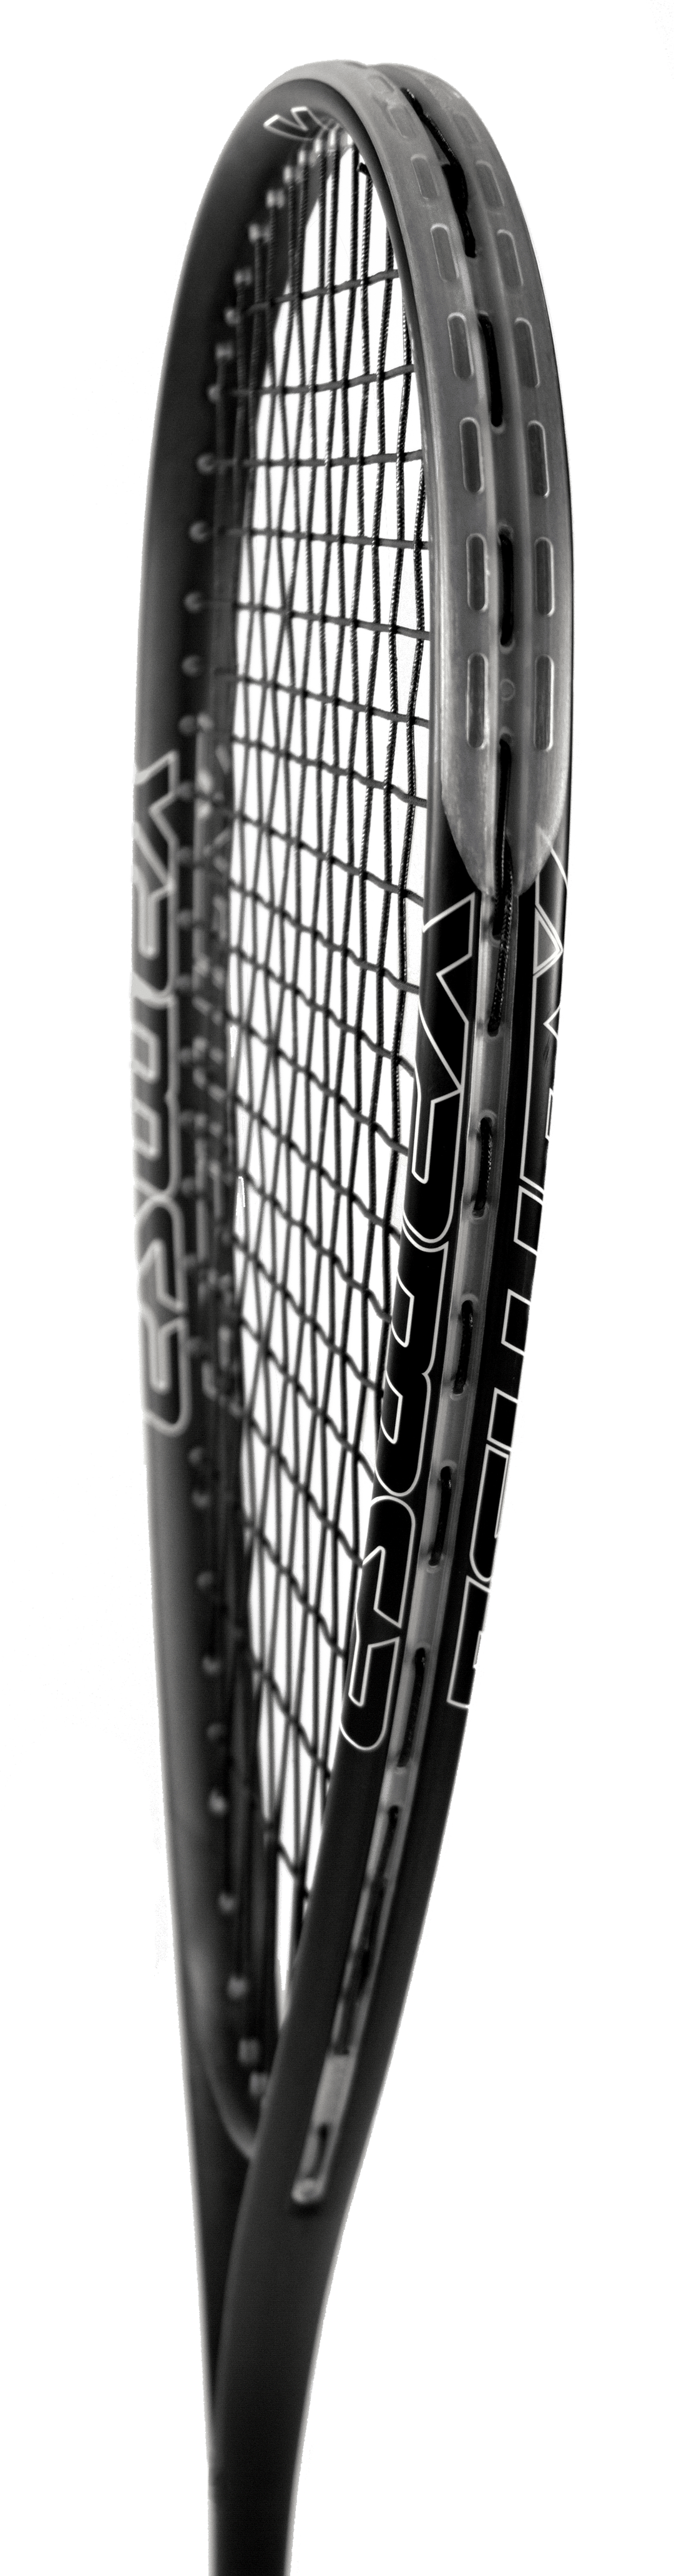 Xamsa Crucible Squash Racquet Strung - XamsaSquash